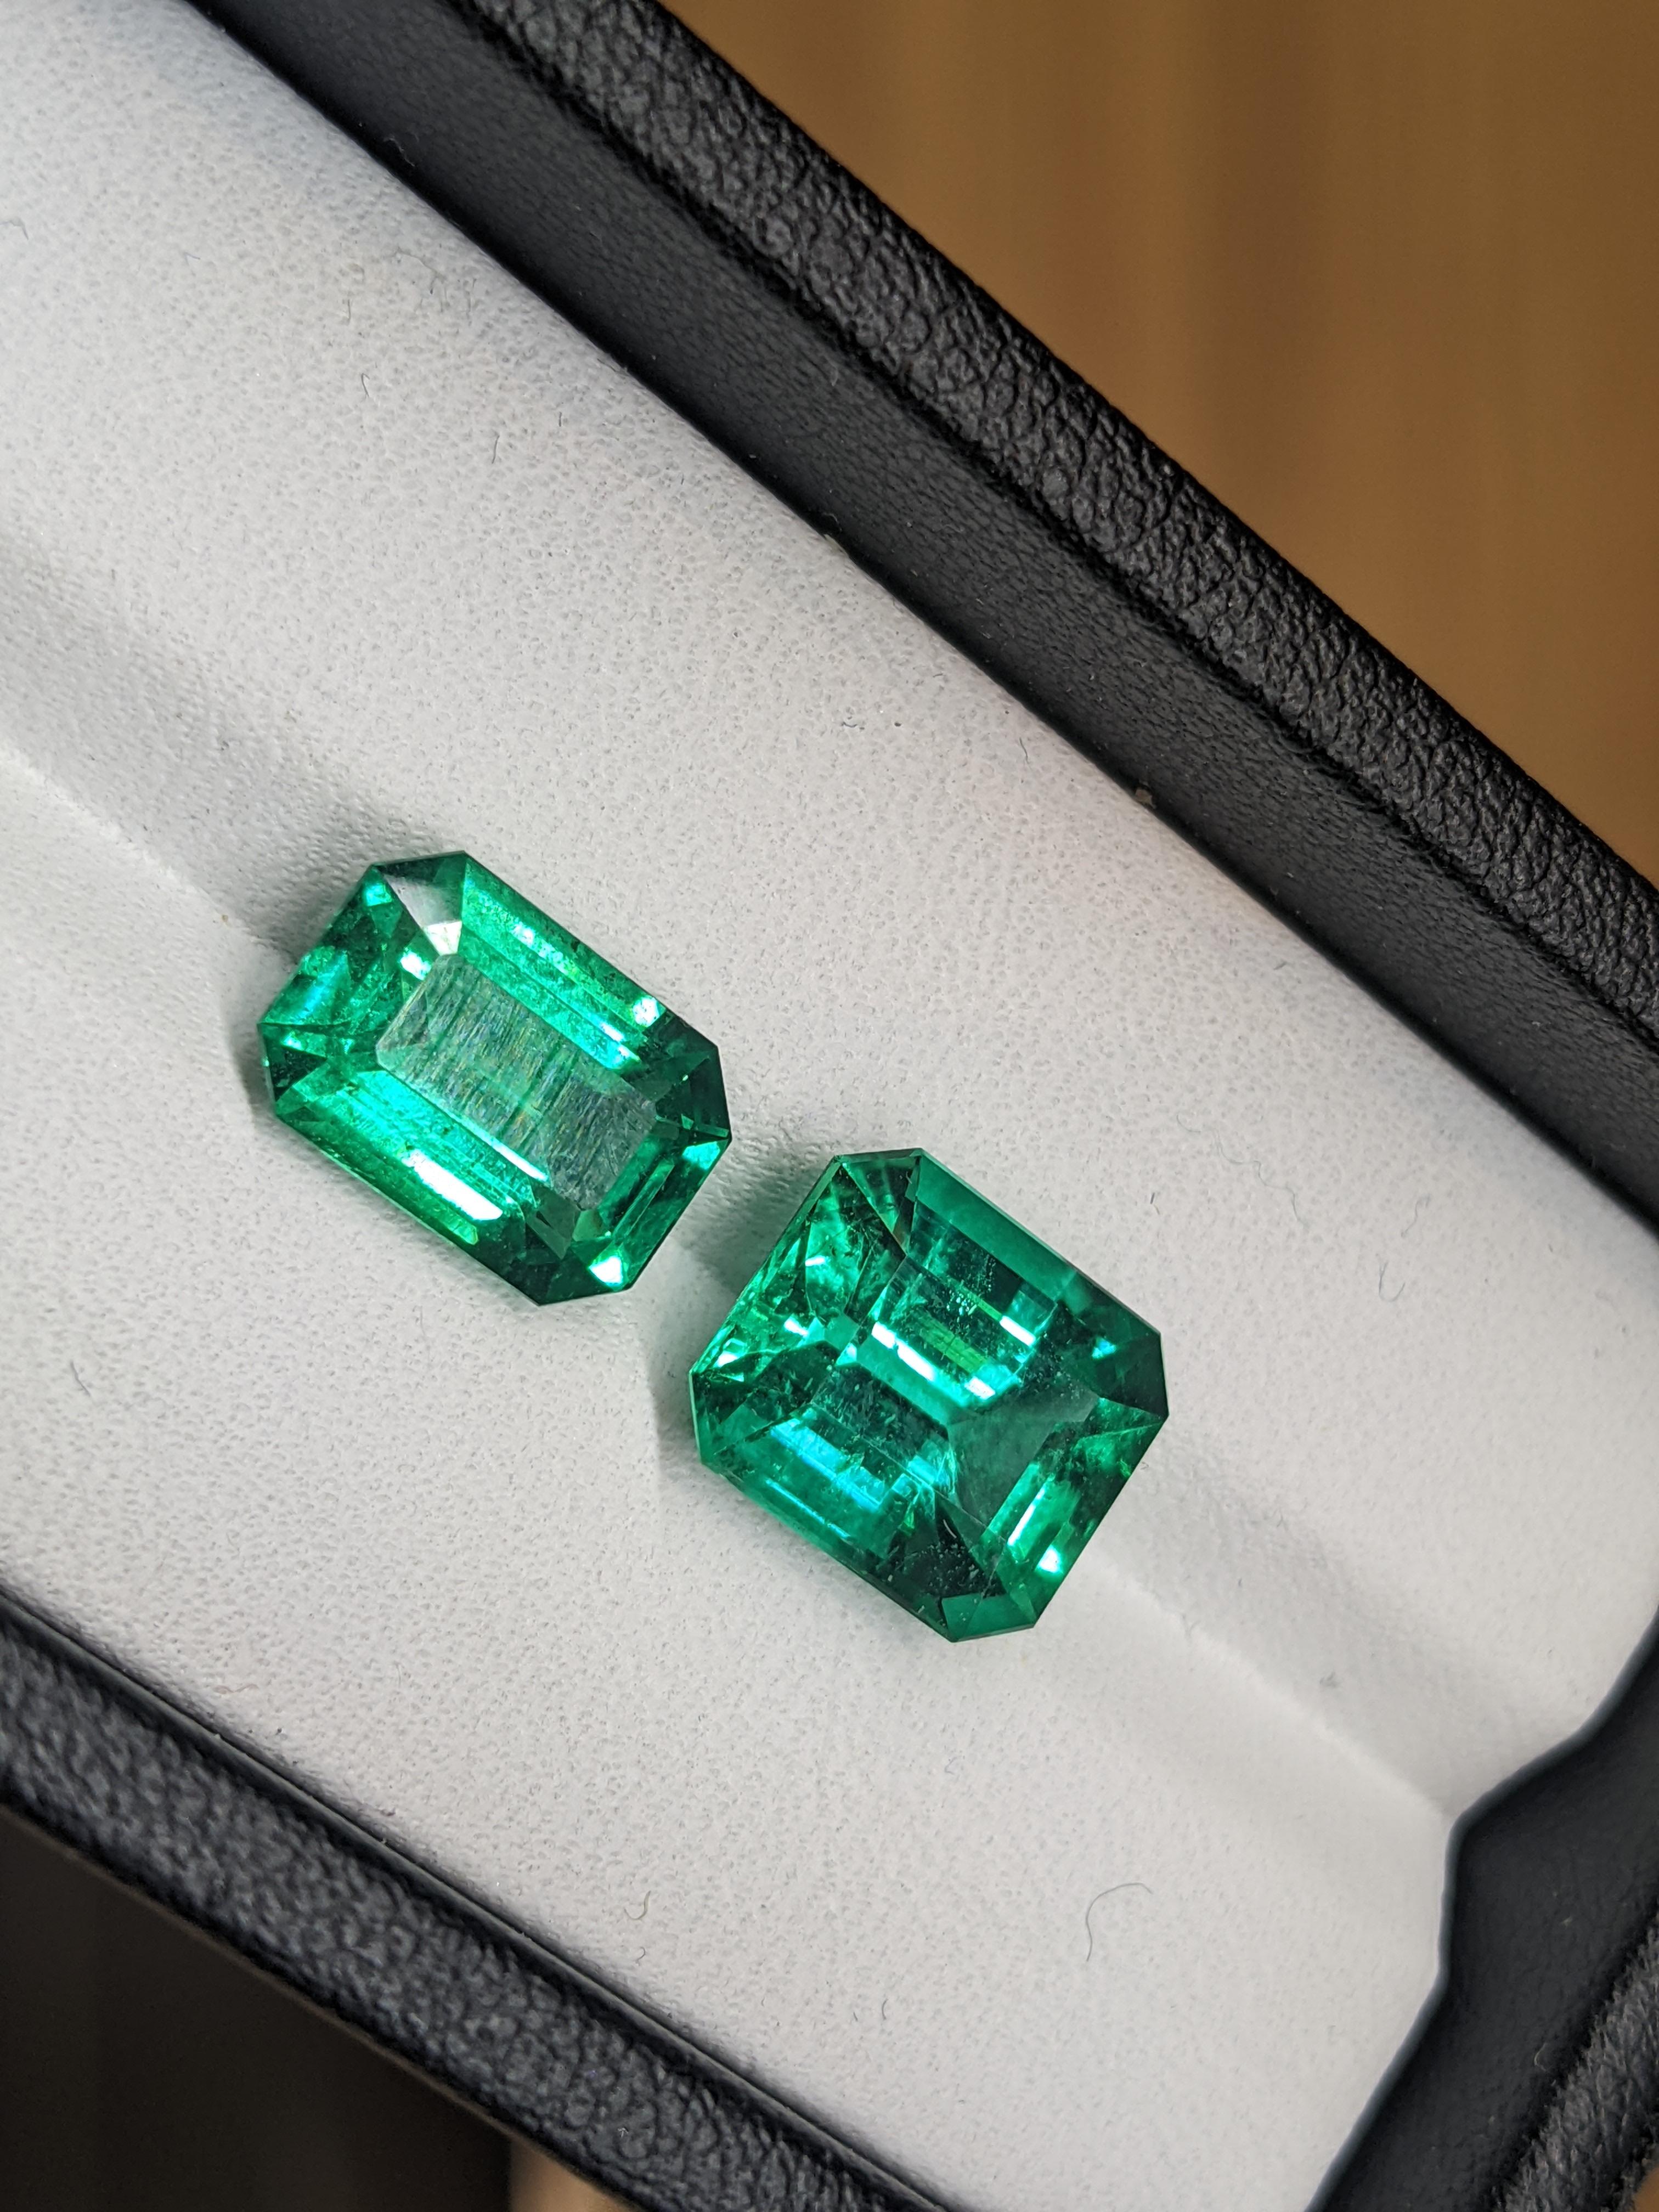 FERRUCCI GIA Certified 4.53 Carat Emerald Cut Emerald Diamond Platinum Ring 9